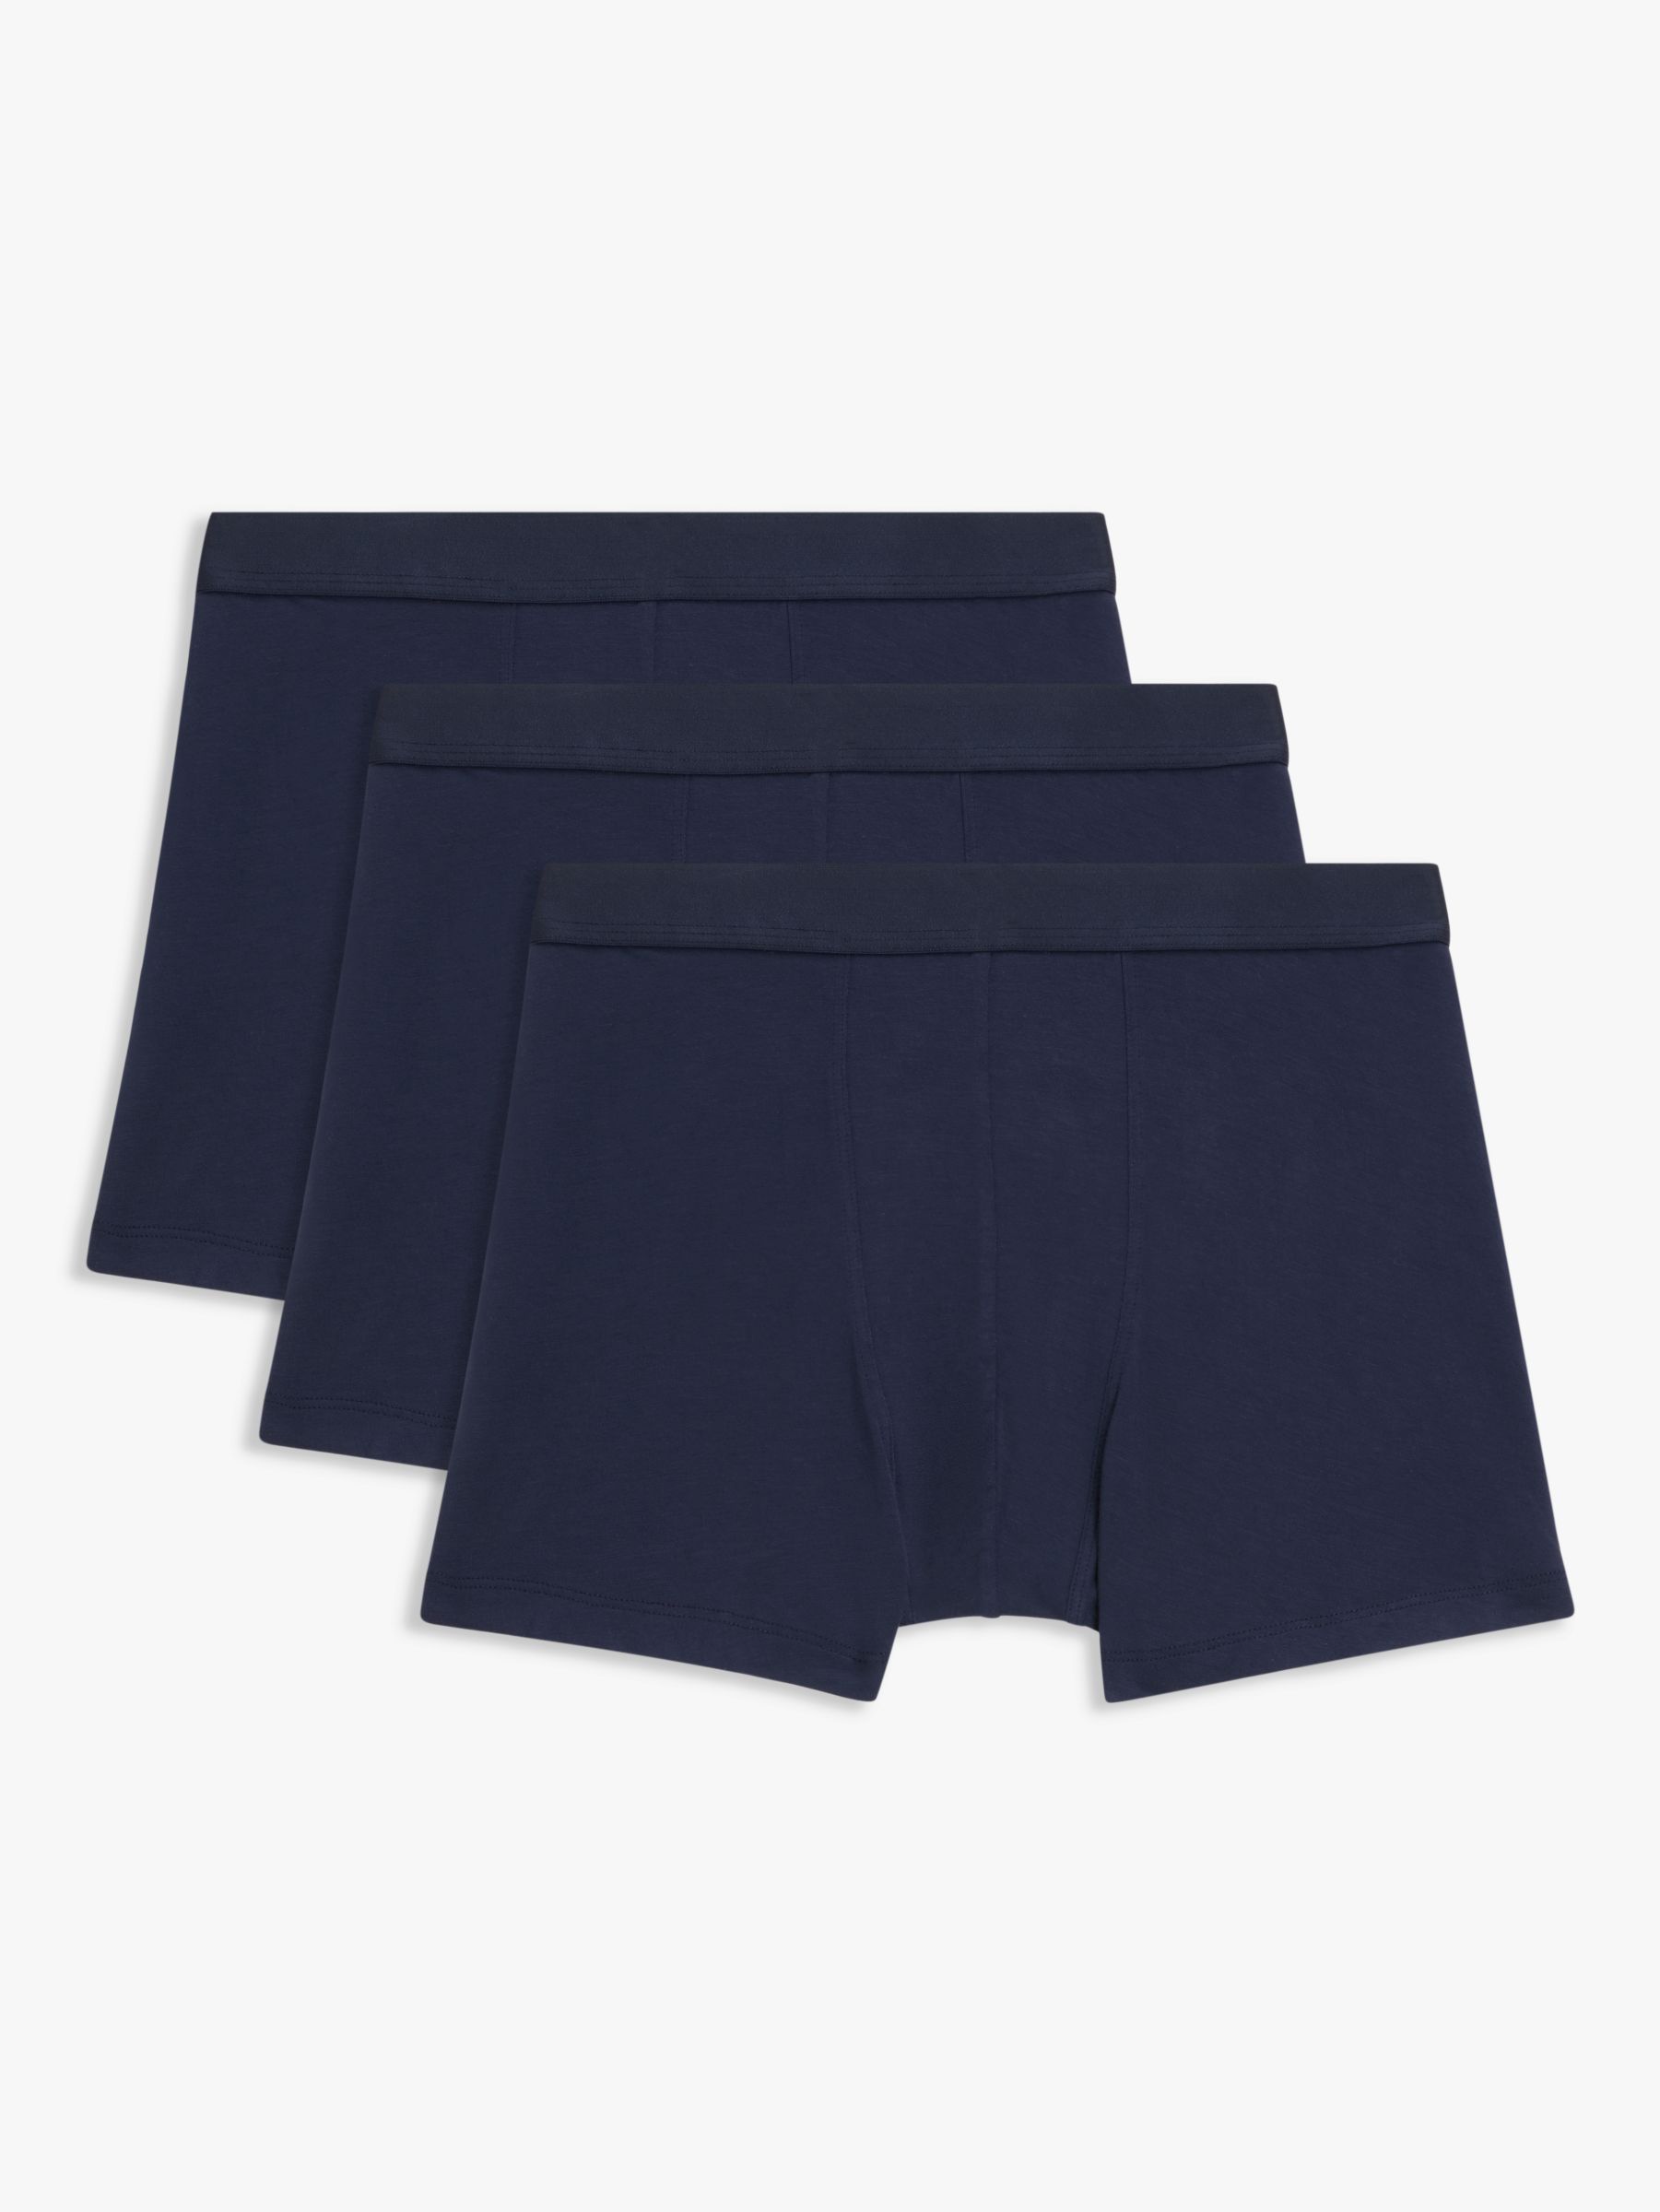 John Lewis Premium Ultra Soft Modal Trunks, Pack of 3, Navy/Blue